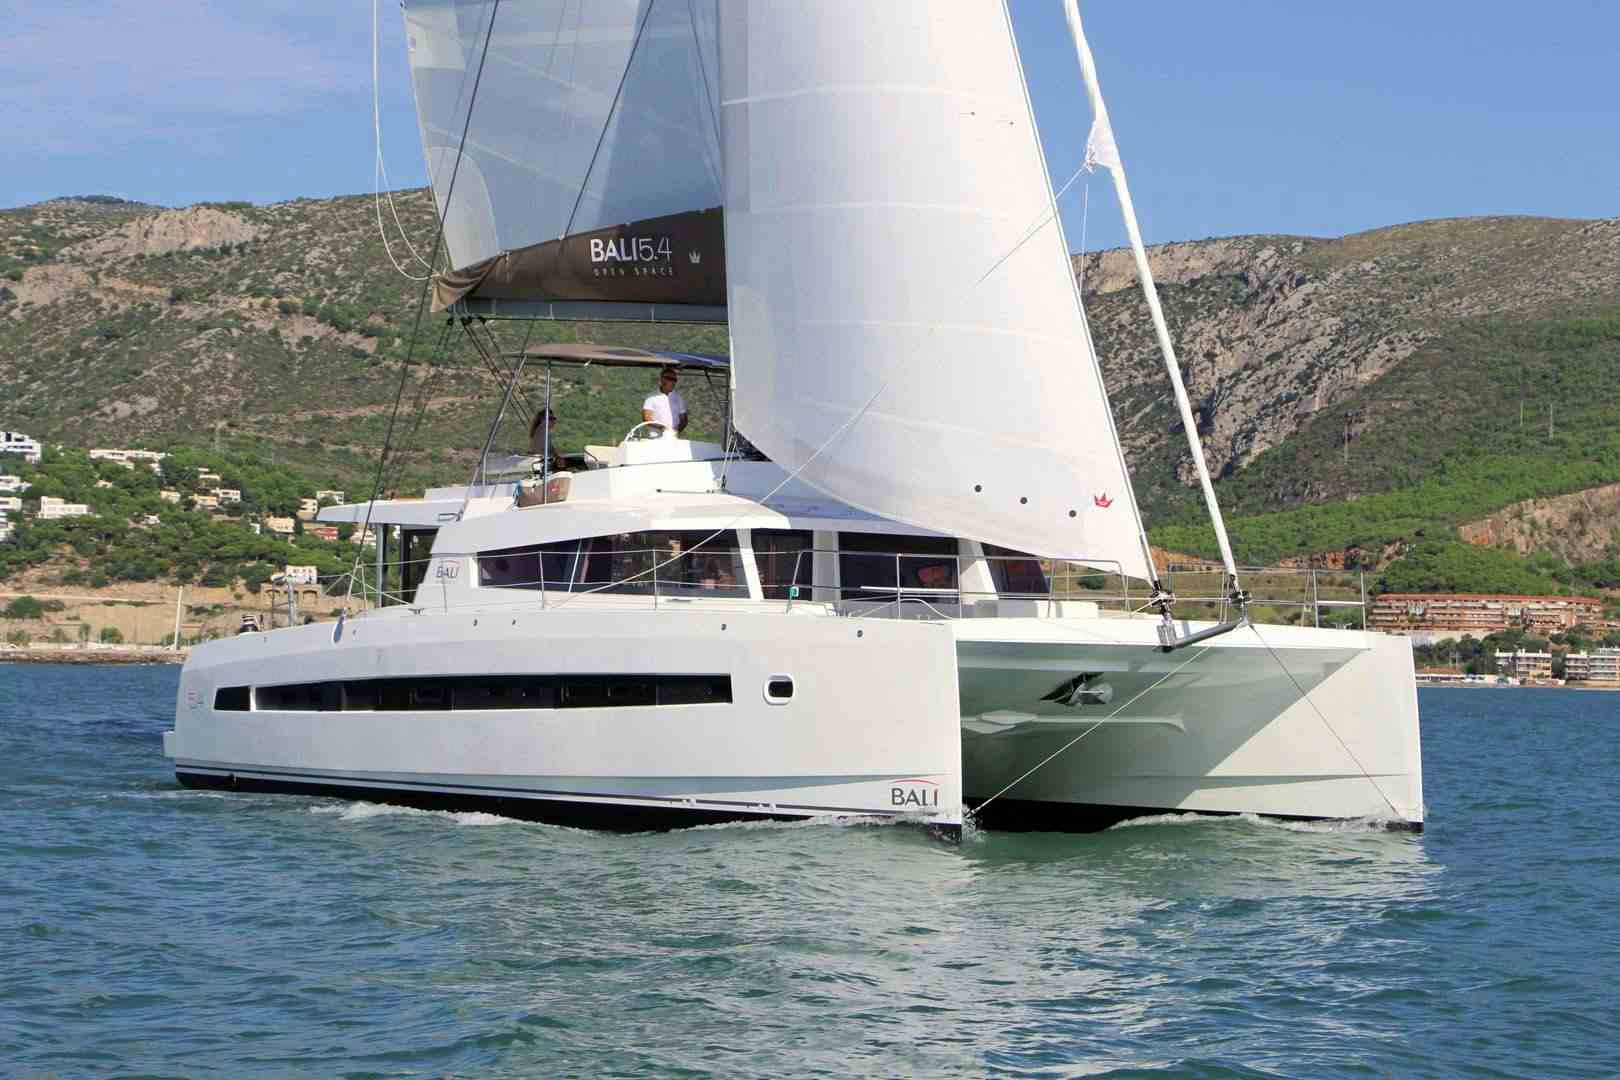 TWO OCEANS - Yacht Charter Roda de Barà & Boat hire in W. Med - Spain/Balearics, Caribbean Leewards, Caribbean Windwards, Caribbean Virgin Islands (BVI) 1